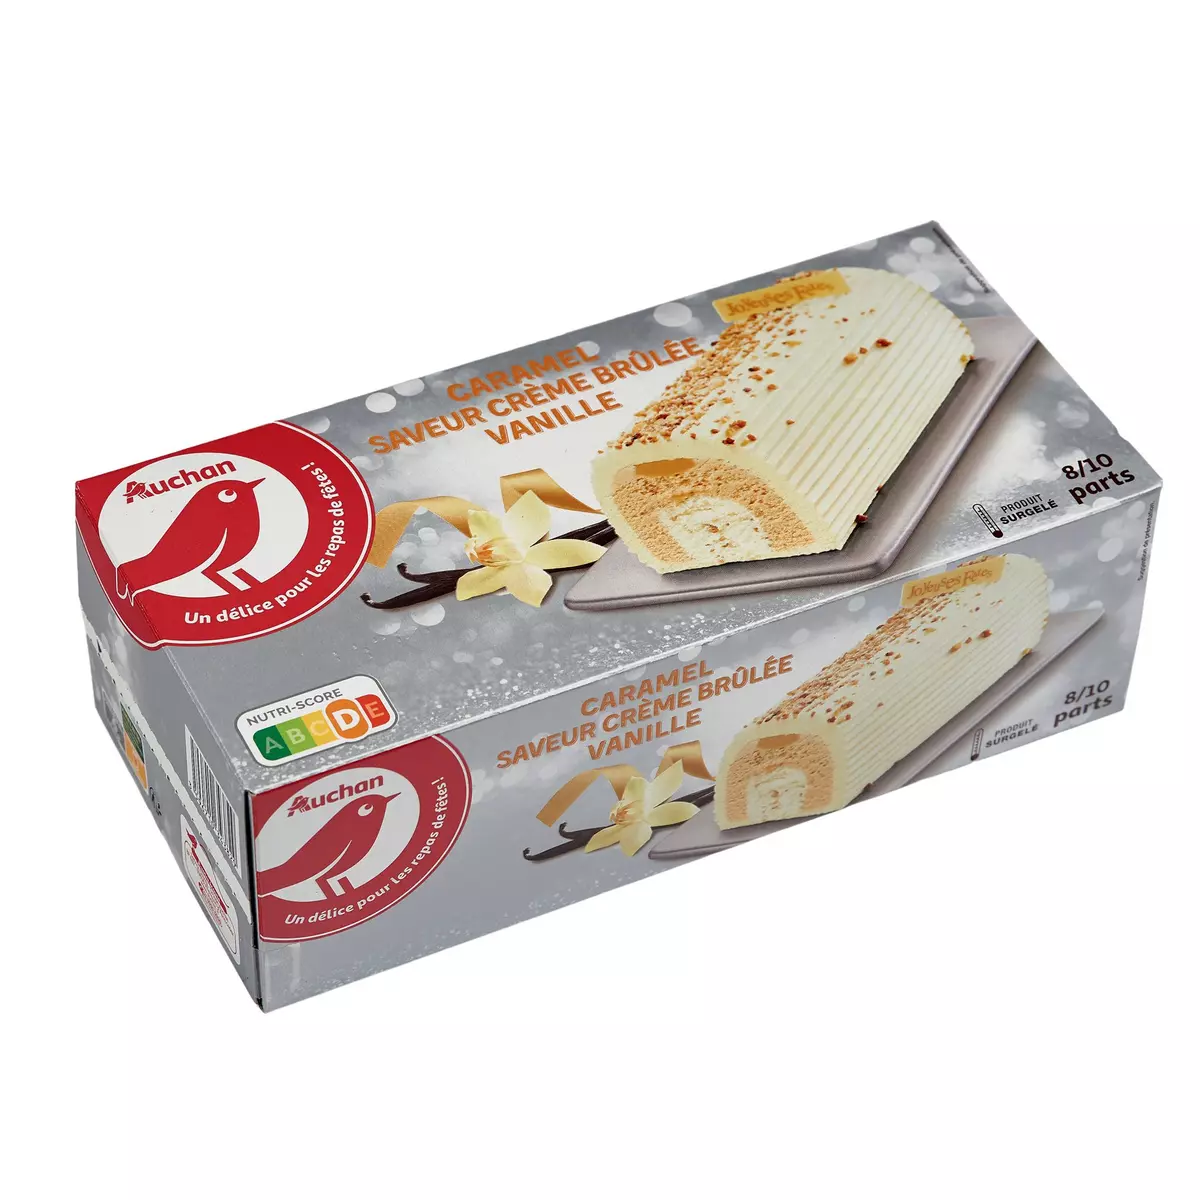 AUCHAN Bûche glacée au caramel vanille saveur crème brûlée 8-10 parts 534g